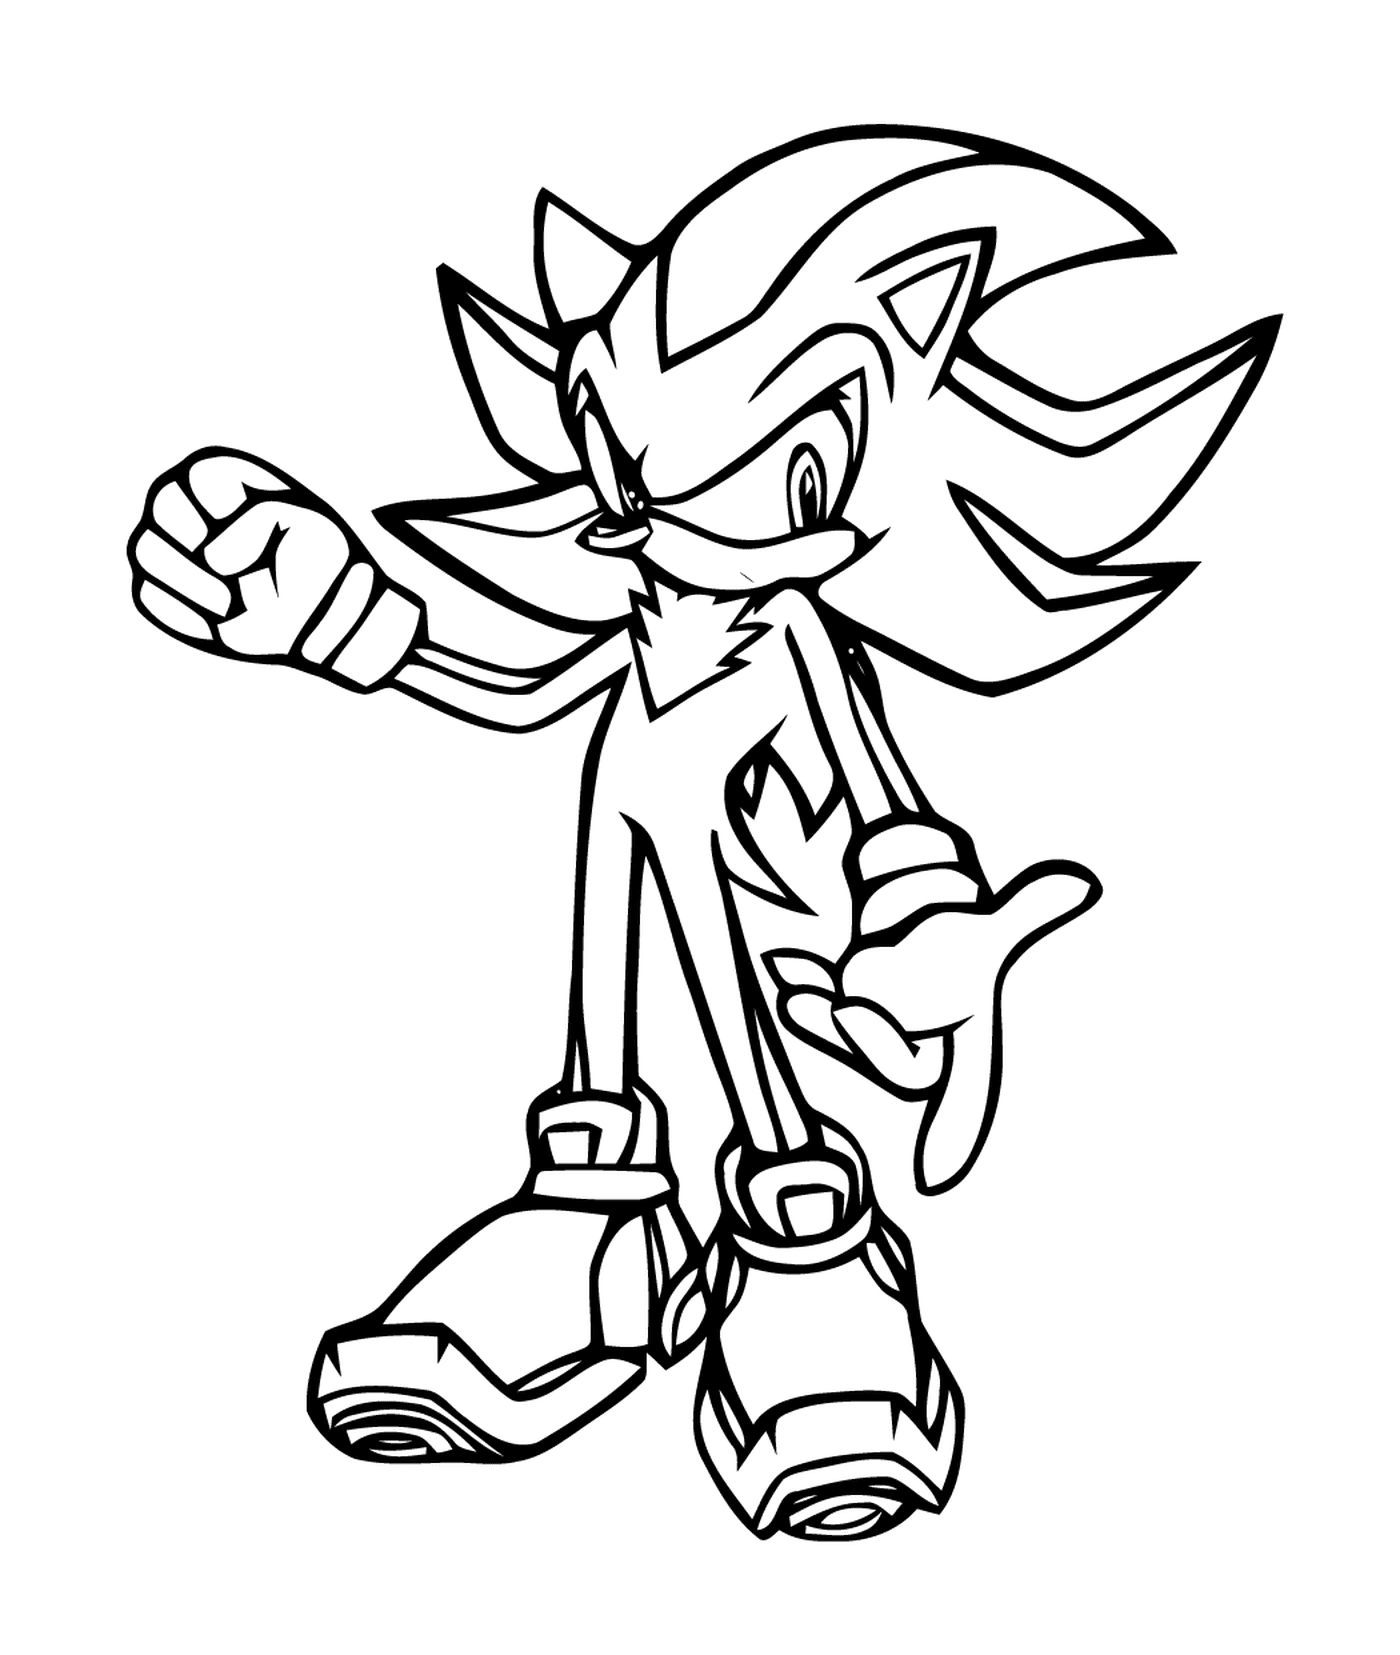  Agile und schnelle Sonic 